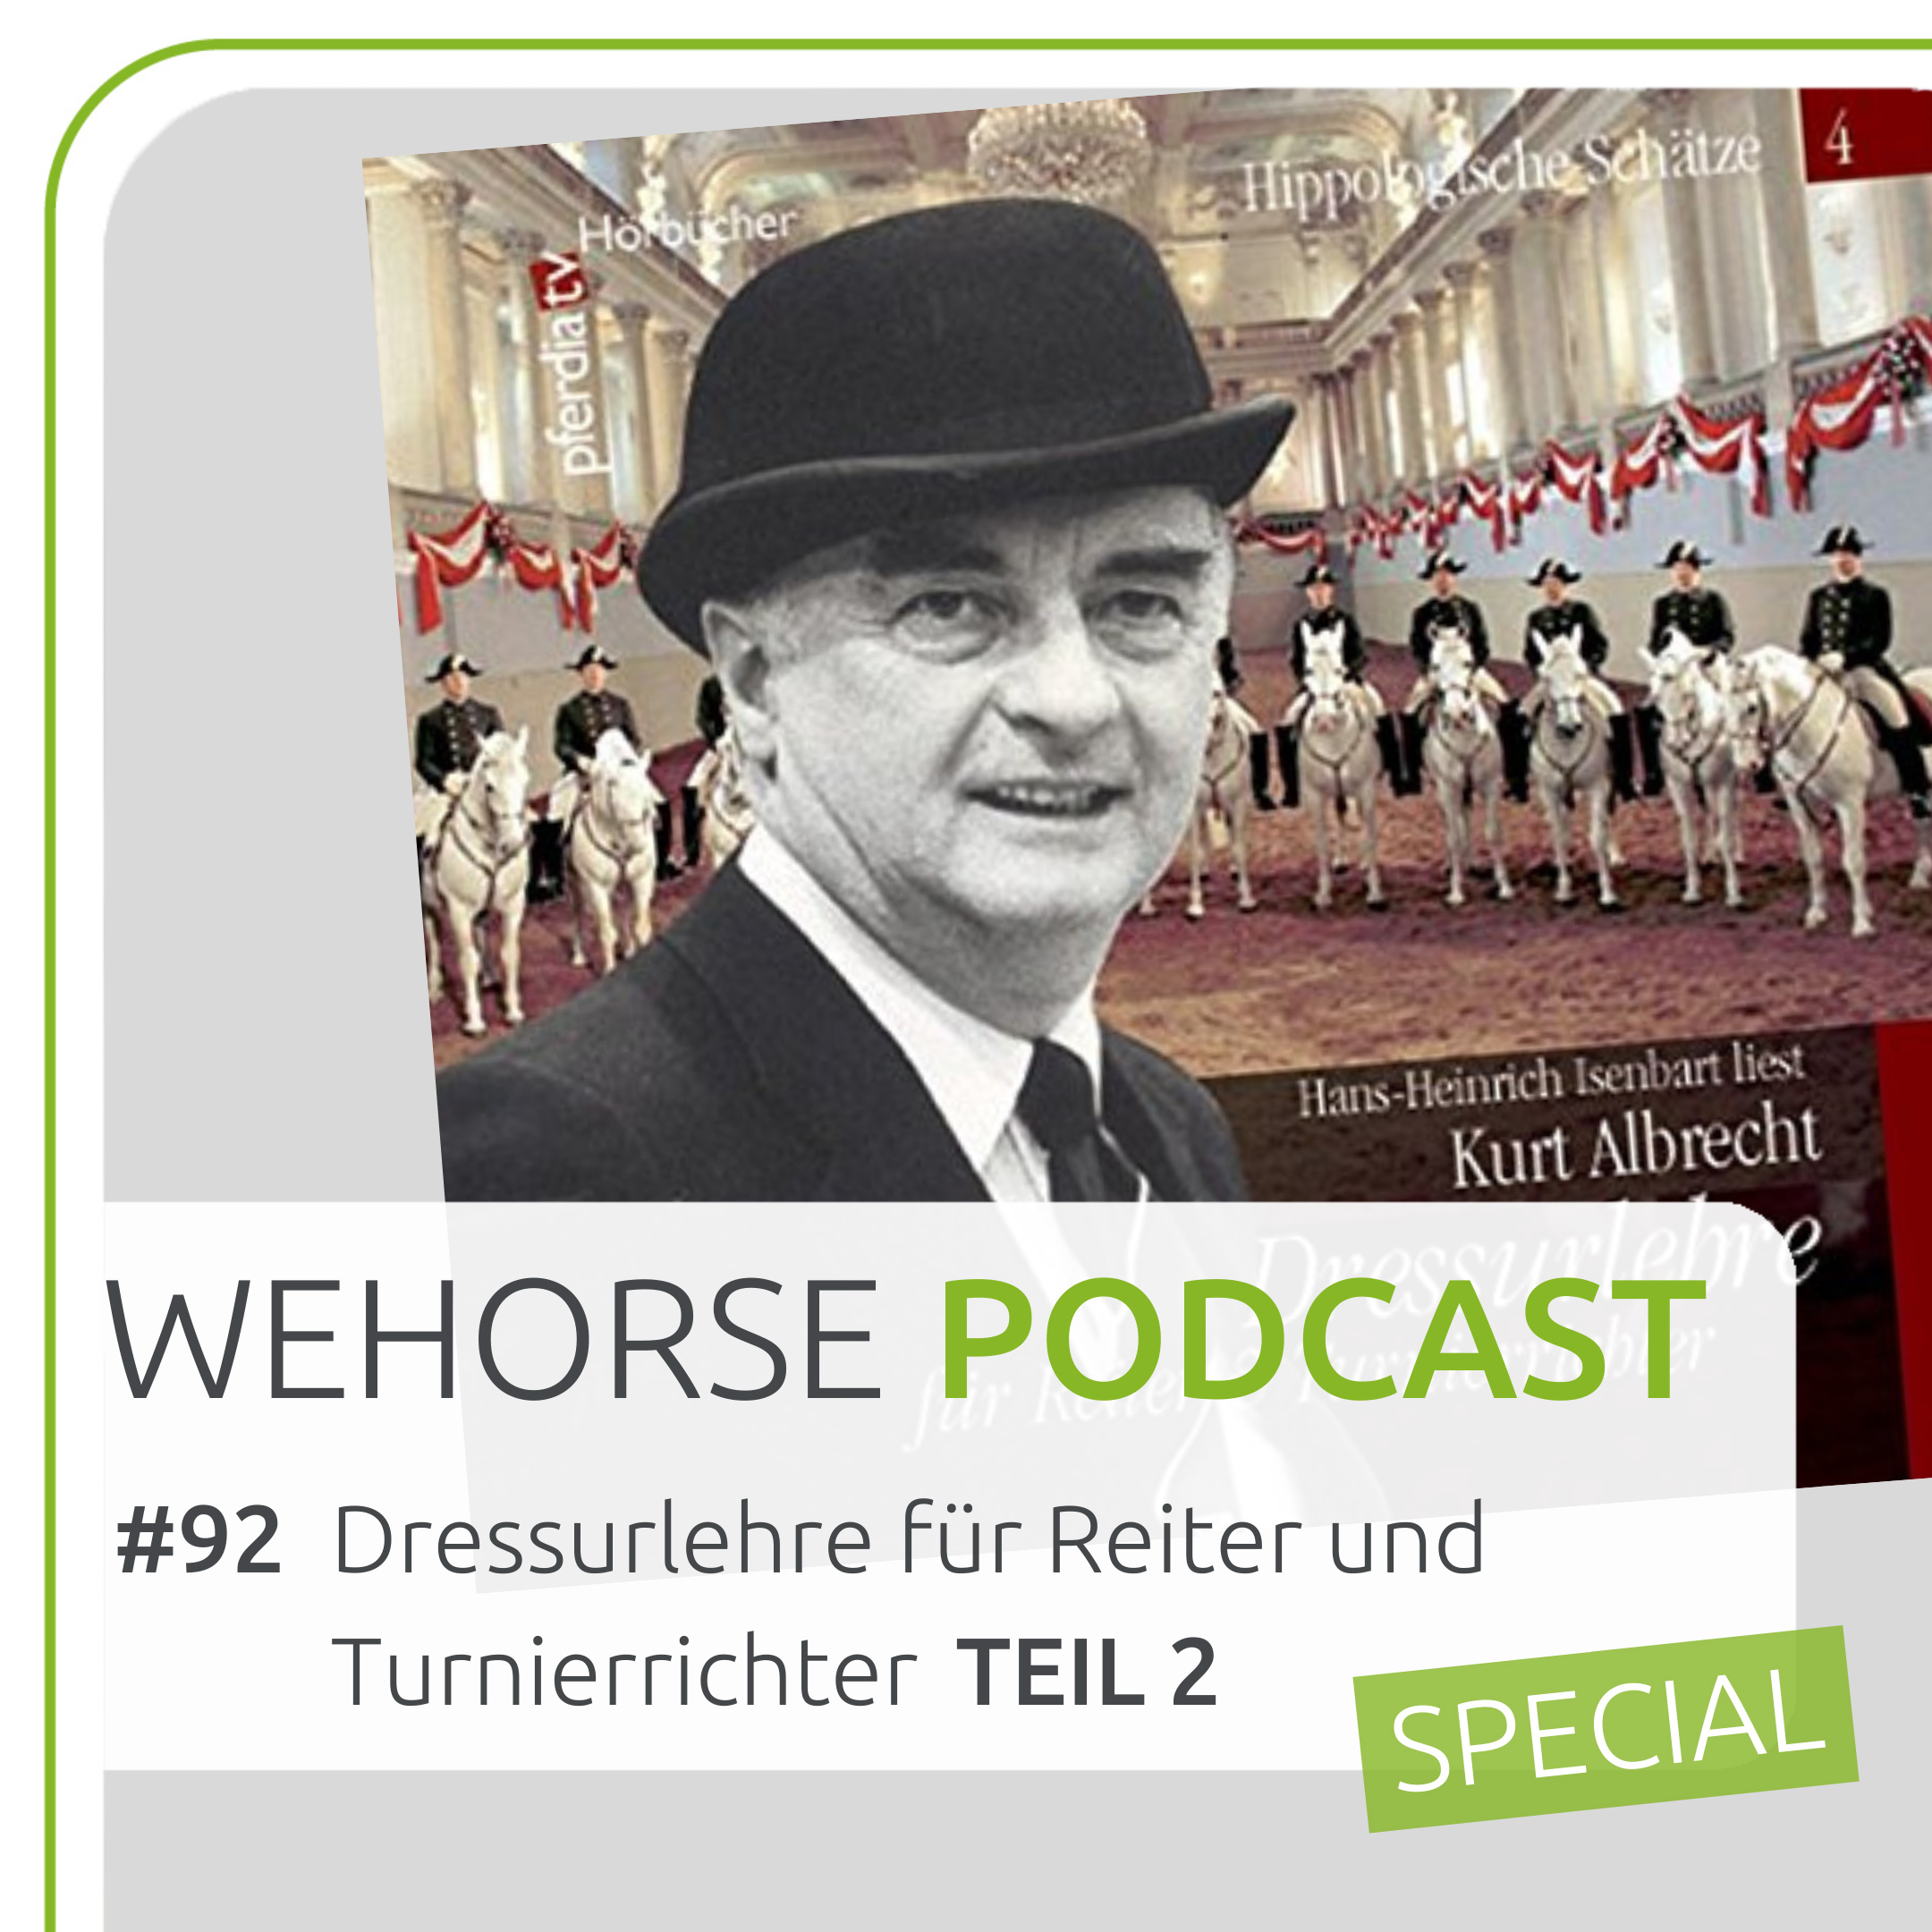 #92 Hörbuch-Special Teil 2: Kurt Albrecht - “Dressurlehre für Turnierrichter und Reiter”